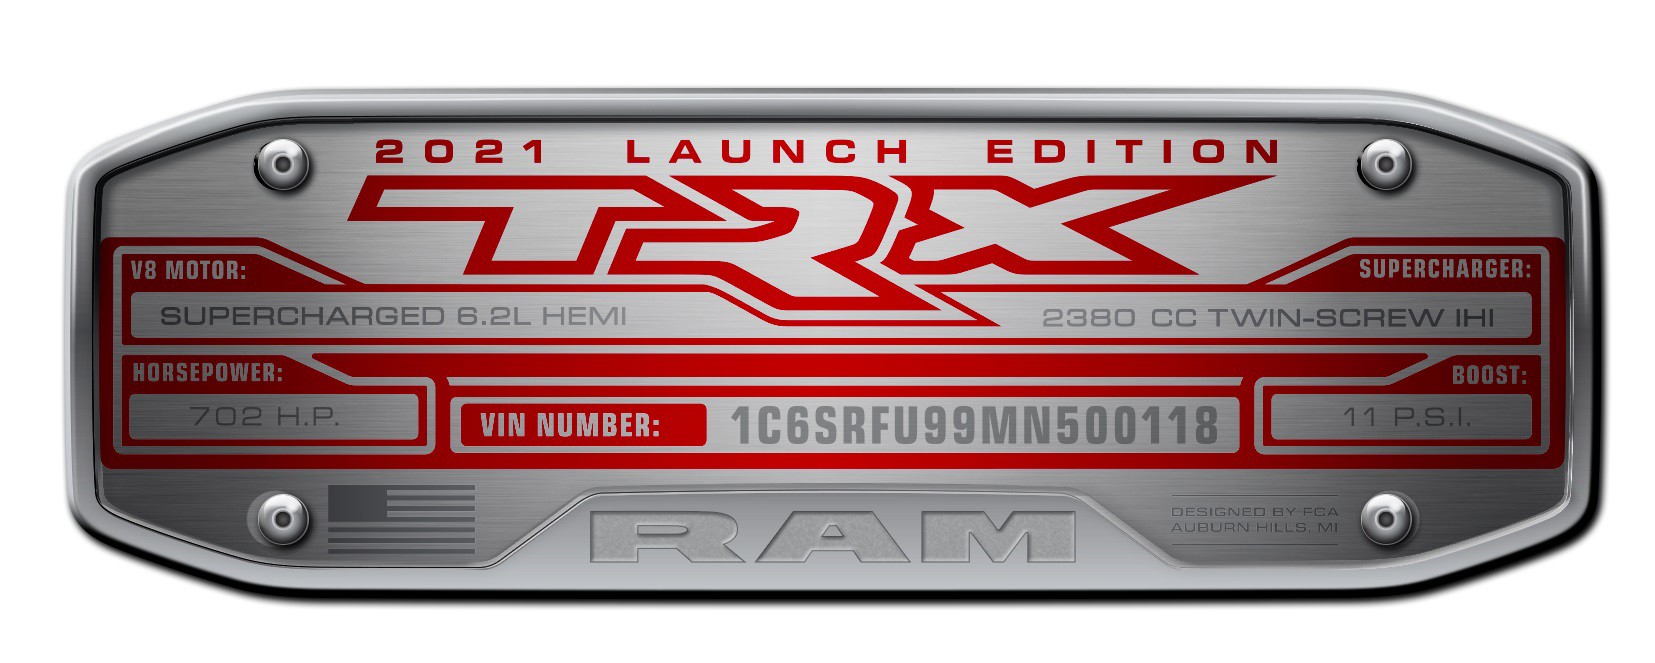 702 คันหมดเกลี้ยง! Ram 1500 TRX Launch Edition ถูกจองเรียบวุธภายใน 3 ชั่วโมง